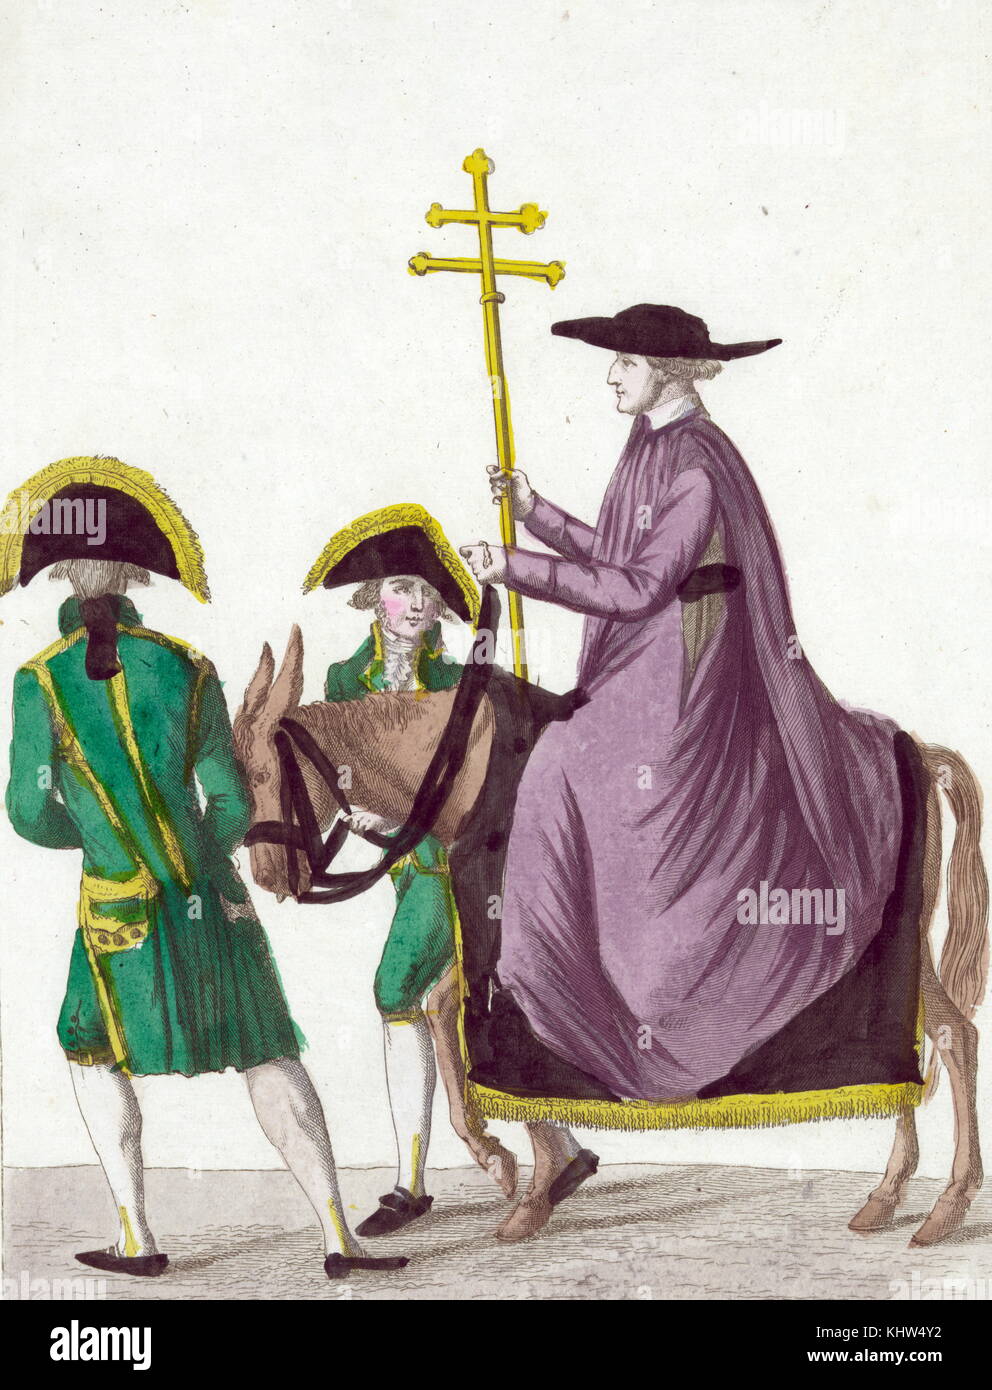 Drucken Darstellung der Apostolische Nuntius, Herr Speroni, auf dem Rücken der Pferde vorbei an zwei Wachen, das Kreuz tragen des Papstes zu der Krönung Napoleons I. in der Kathedrale von Notre Dame. Vom 19. Jahrhundert Stockfoto